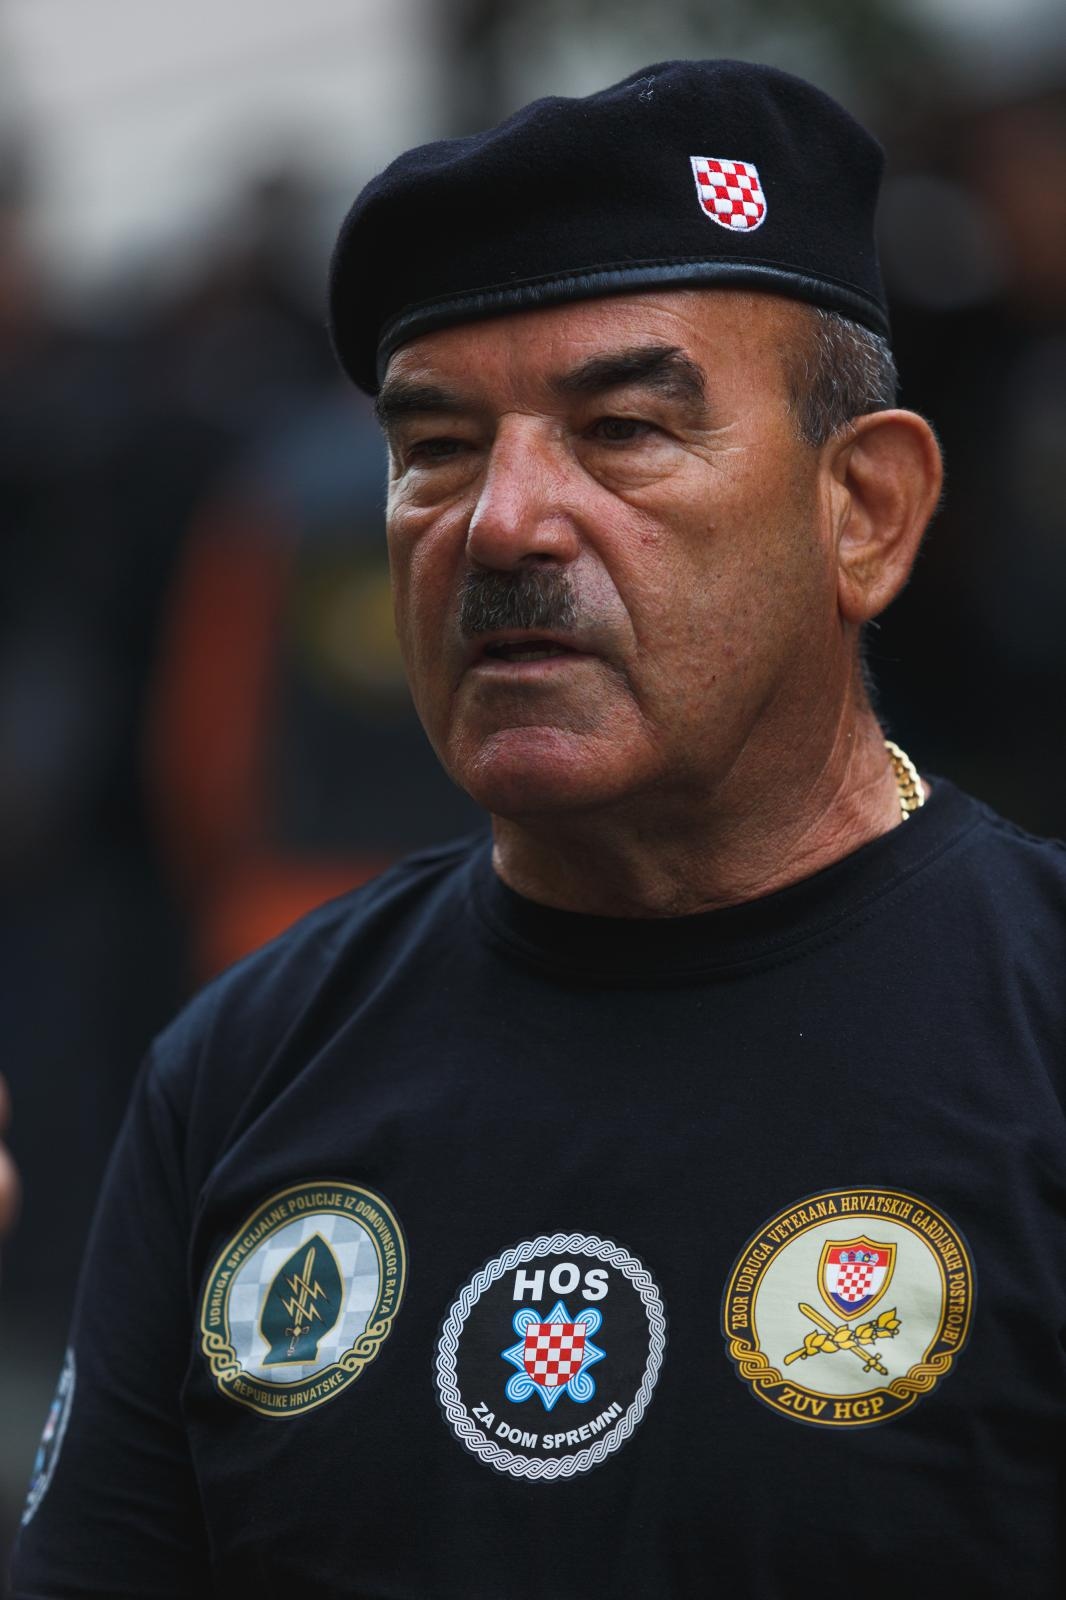 Marko Skejo, bivši ratni zapovjednik IX. bojne HOS-a Rafael Vitez Boban